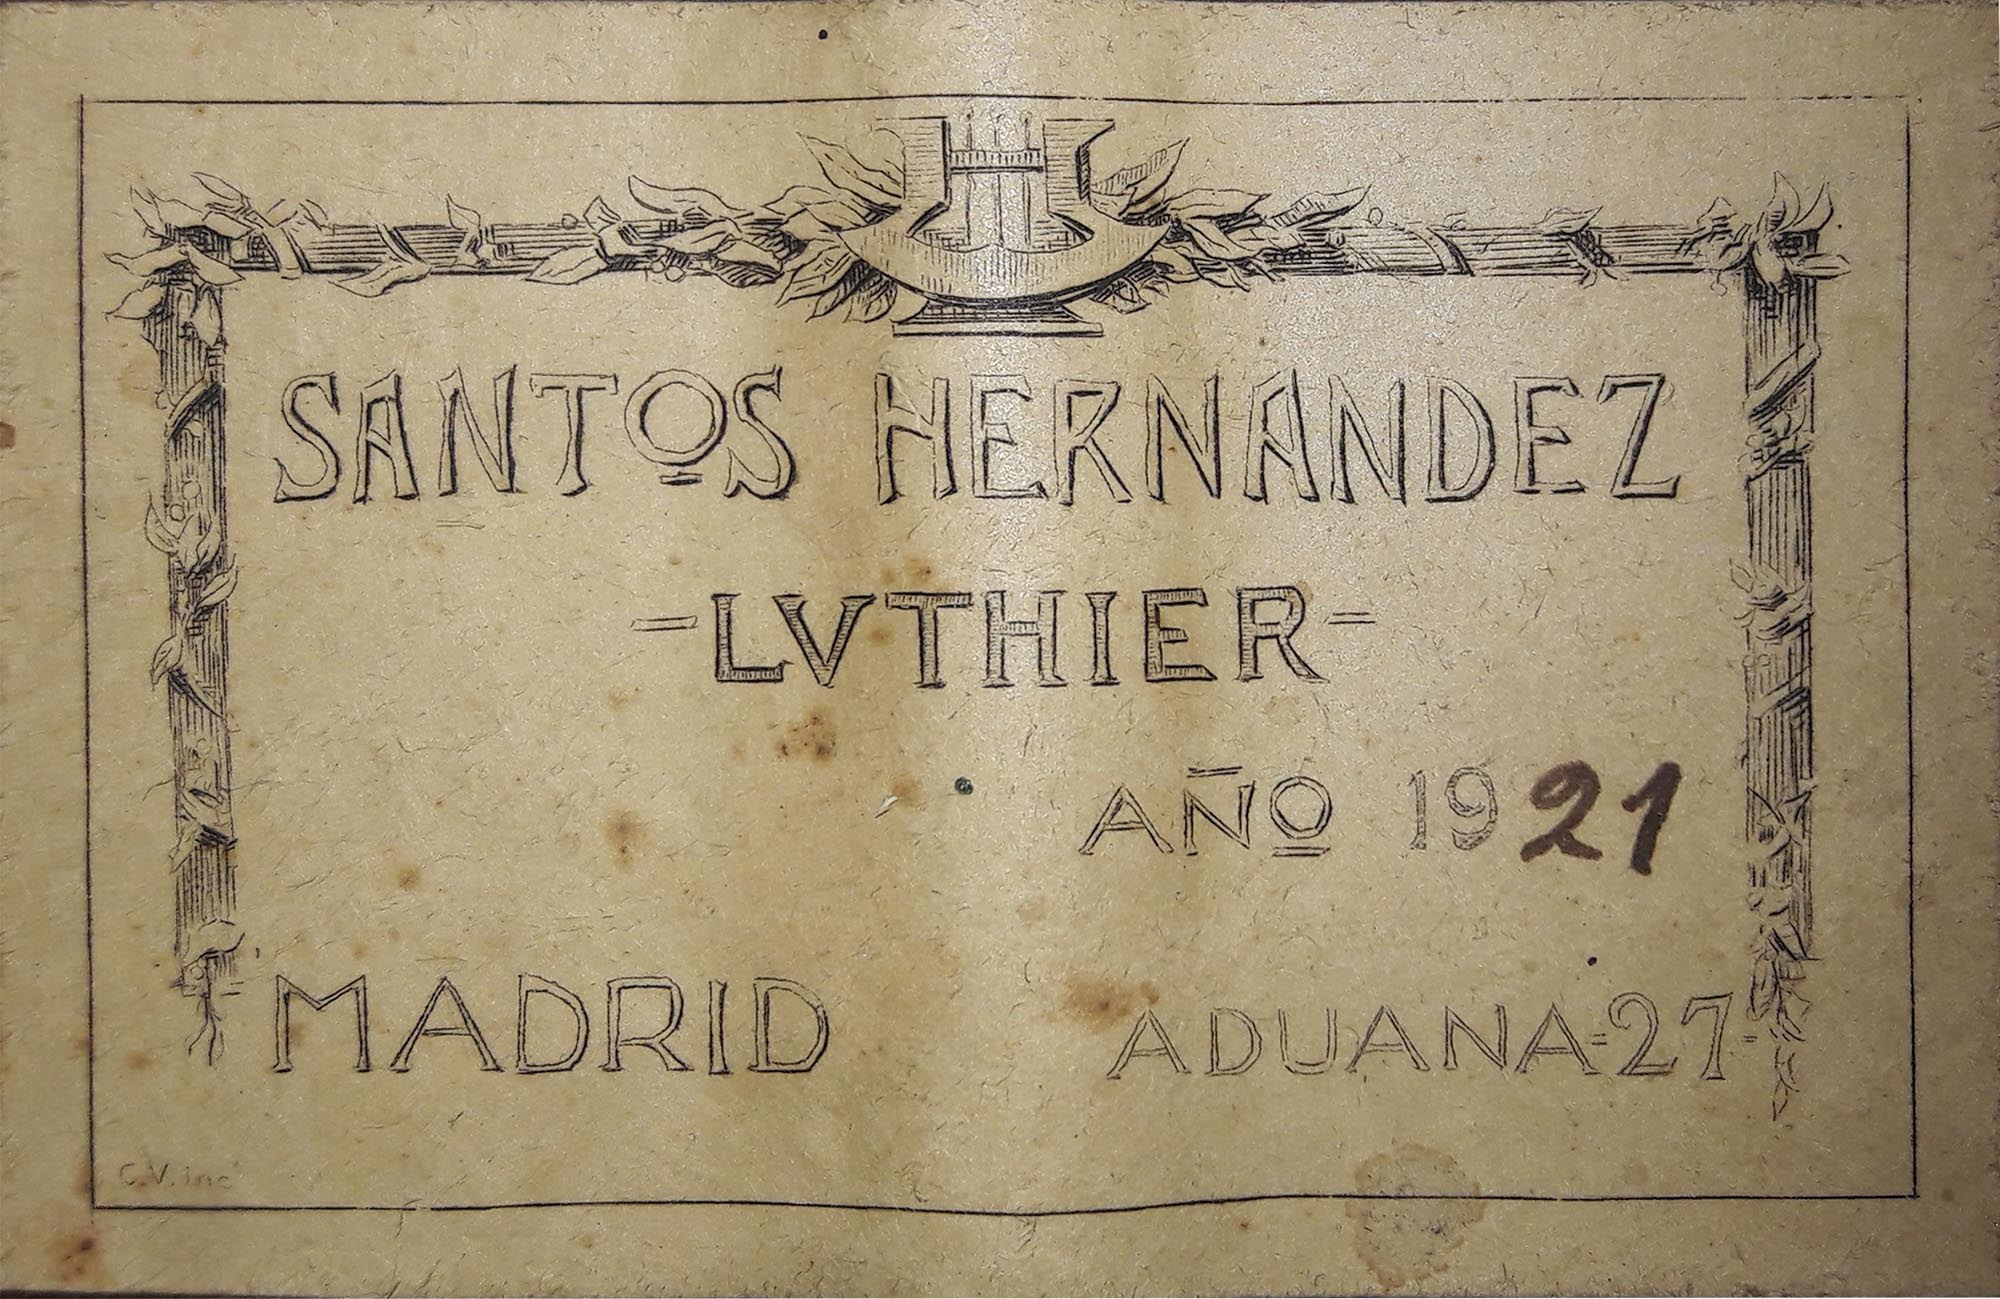 a santos hernandez 1921 20102018 label